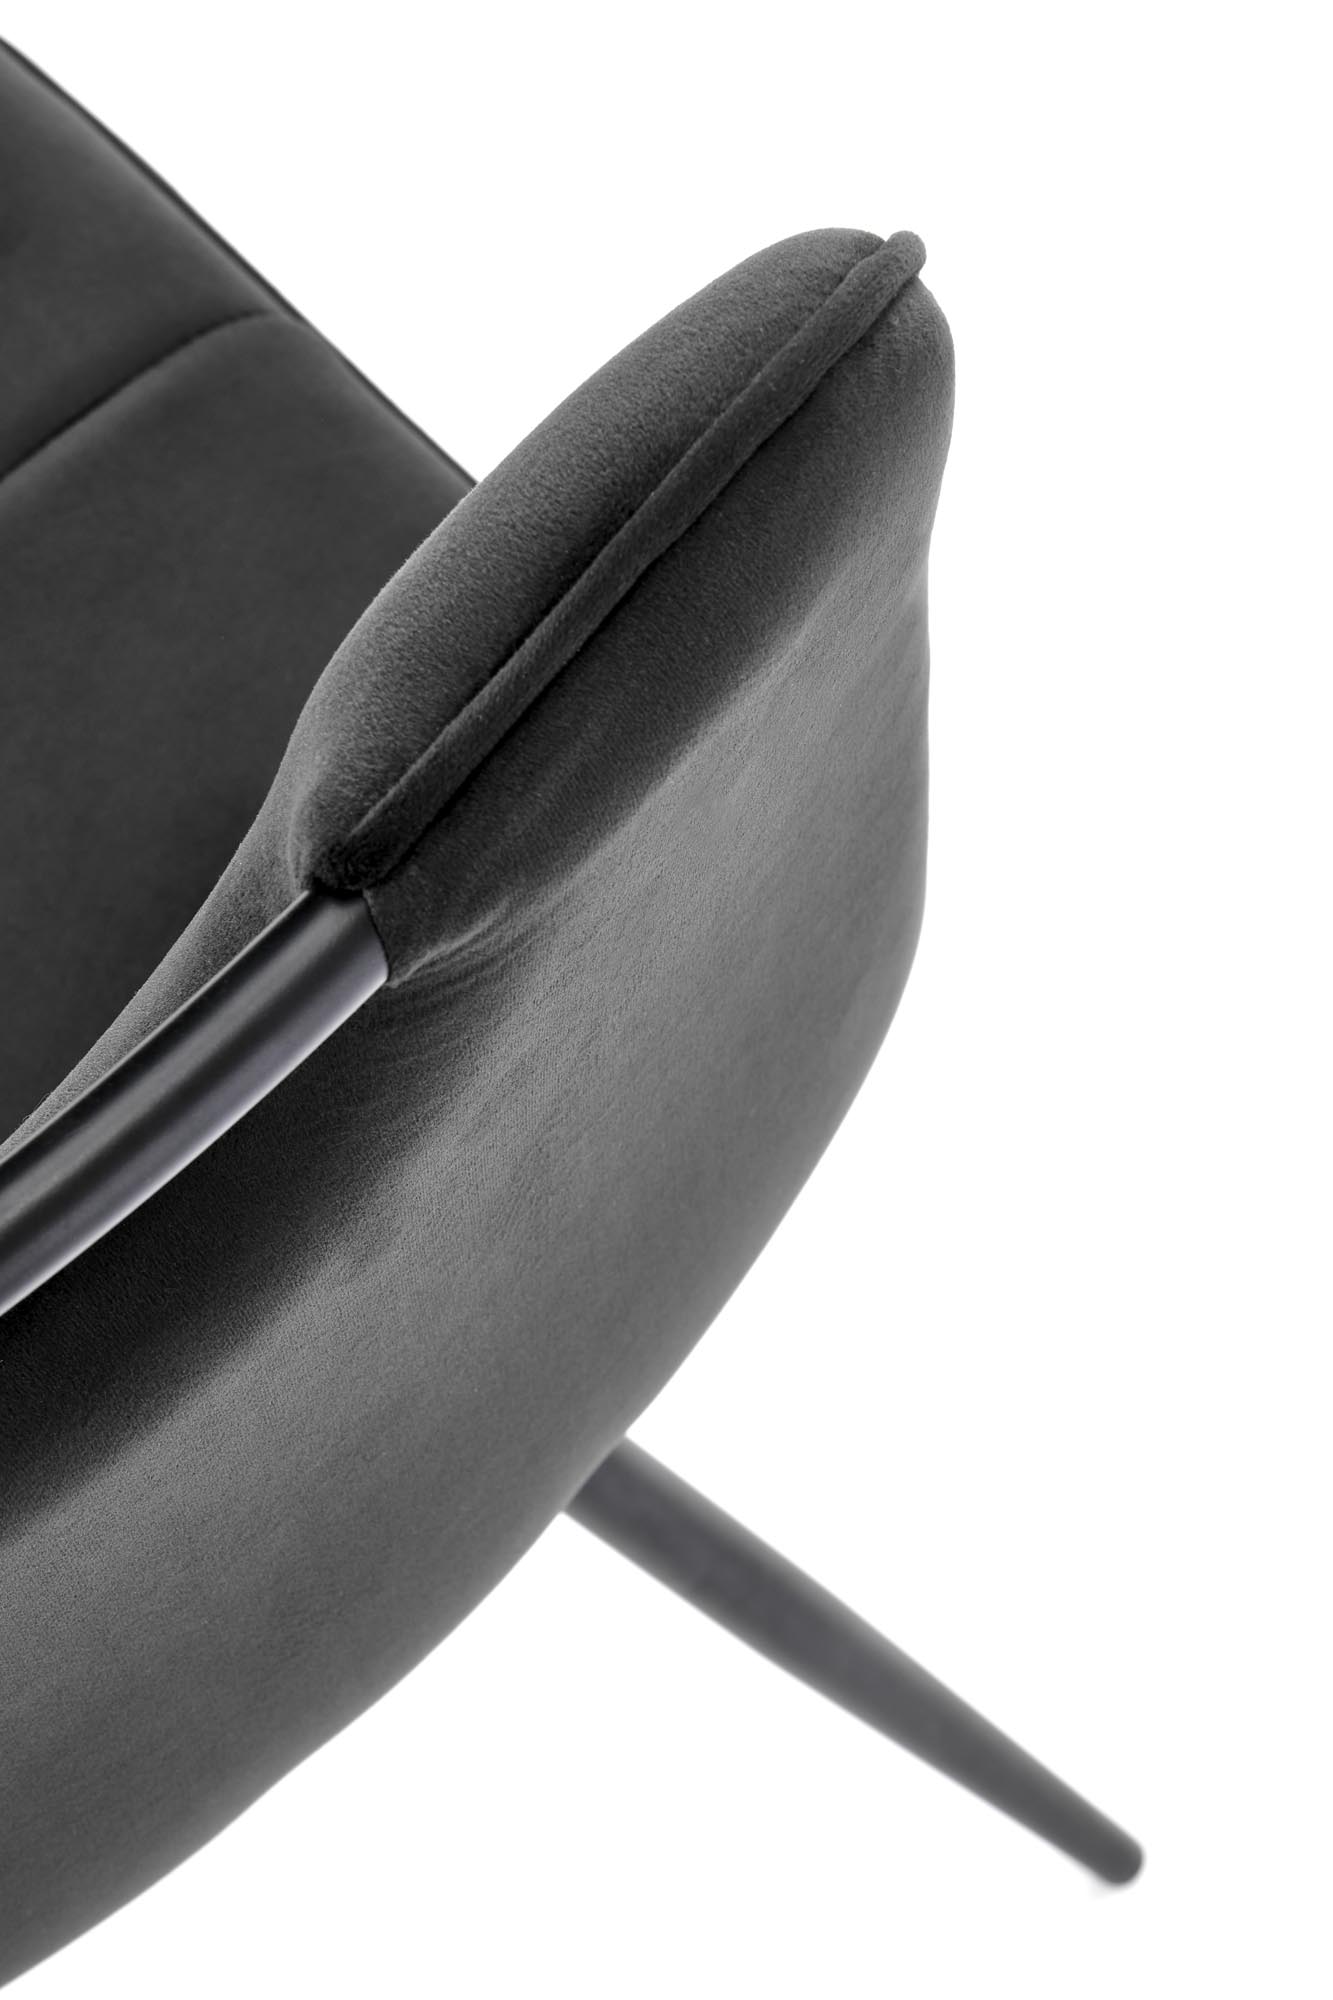 Scaun tapițat K521 - negru Židle čalouněné k521 - Černý